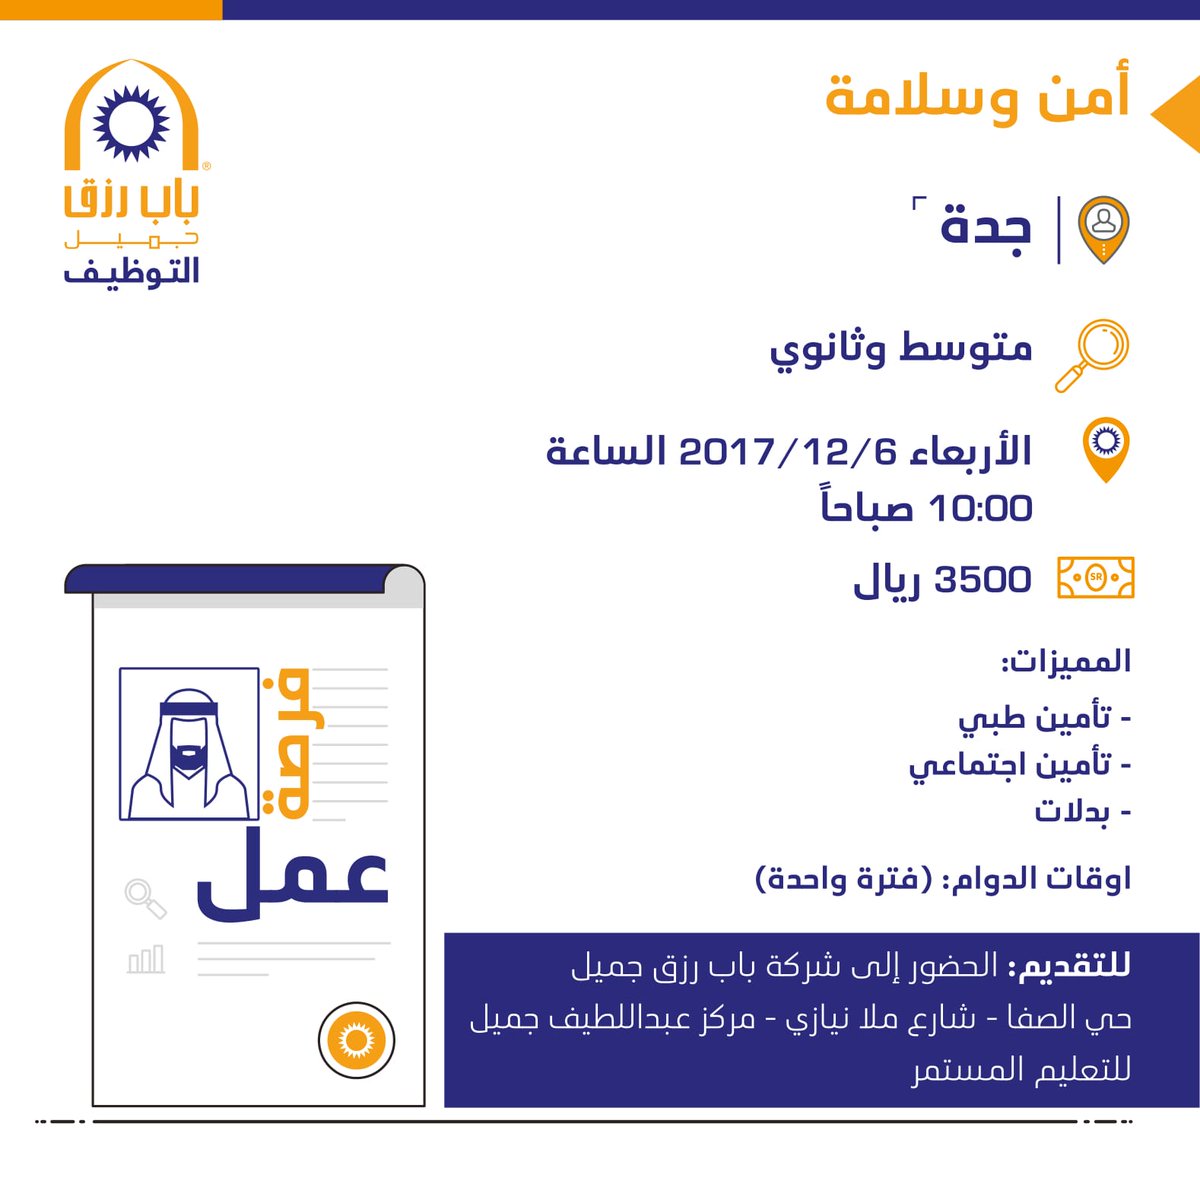 وظائف امن وسلامة في جدة لحملة الكفاءة المتوسطة والثانوي راتب 3500